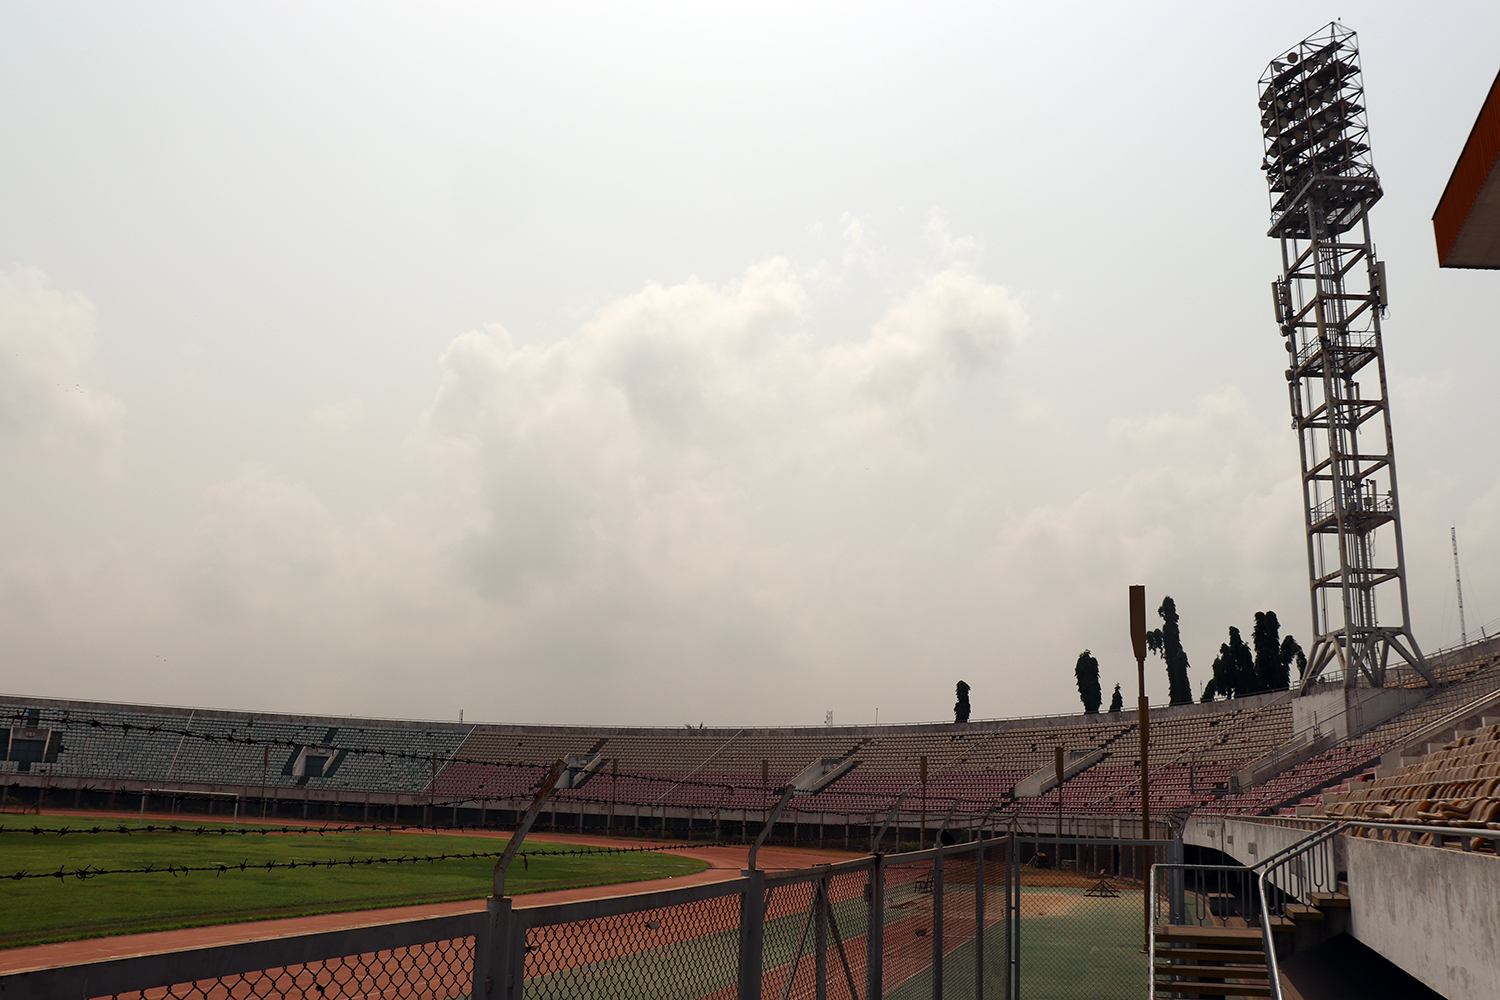 Ce stade abrite des rencontres de football, mais il est aussi équipé pour héberger des compétitions d’autres sports comme des meetings d’athlétisme. 